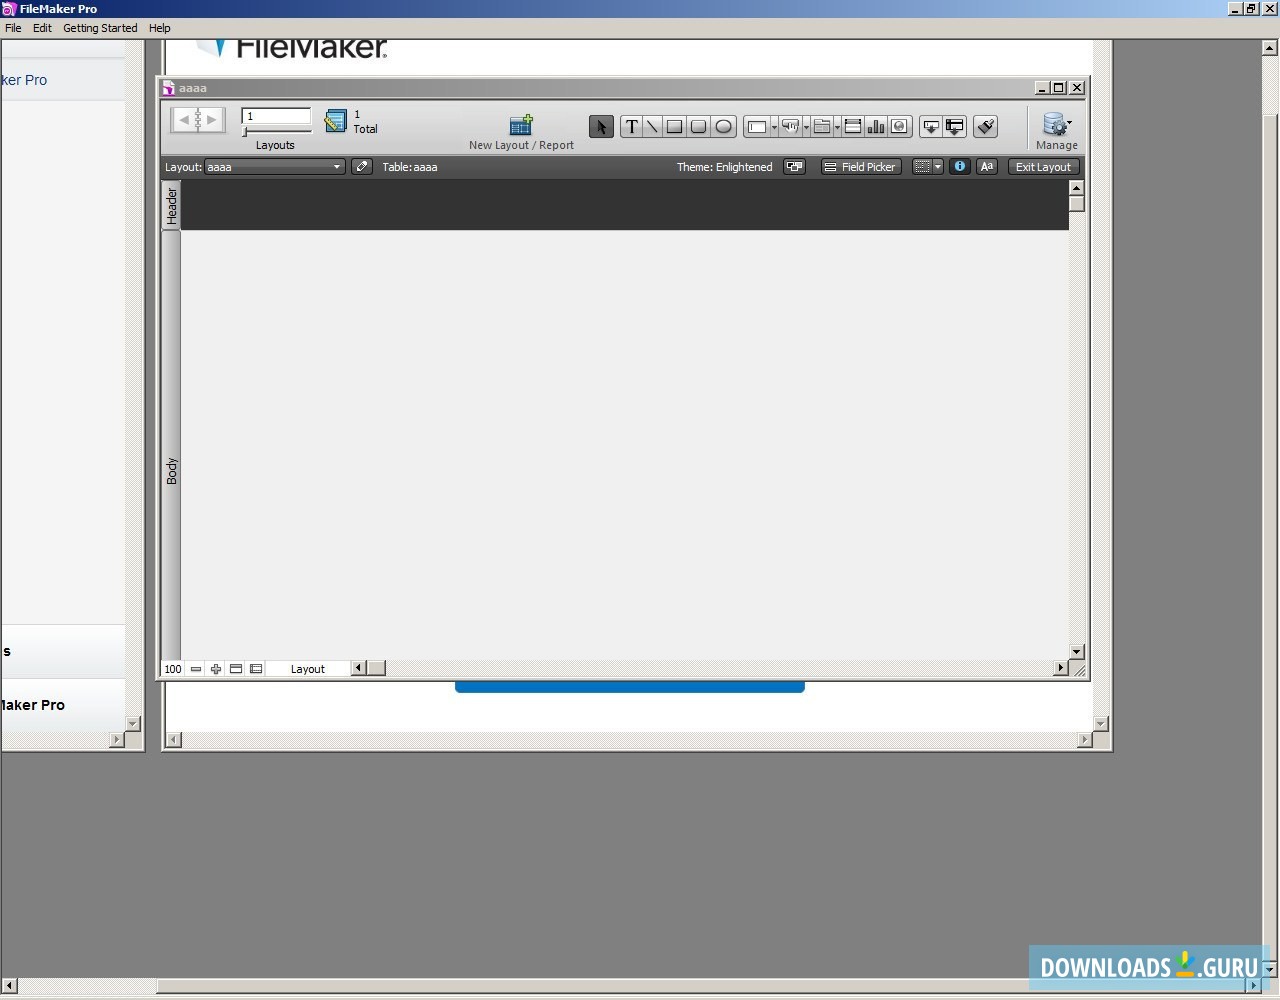 Download FileMaker Pro 16 Advanced + License Keys